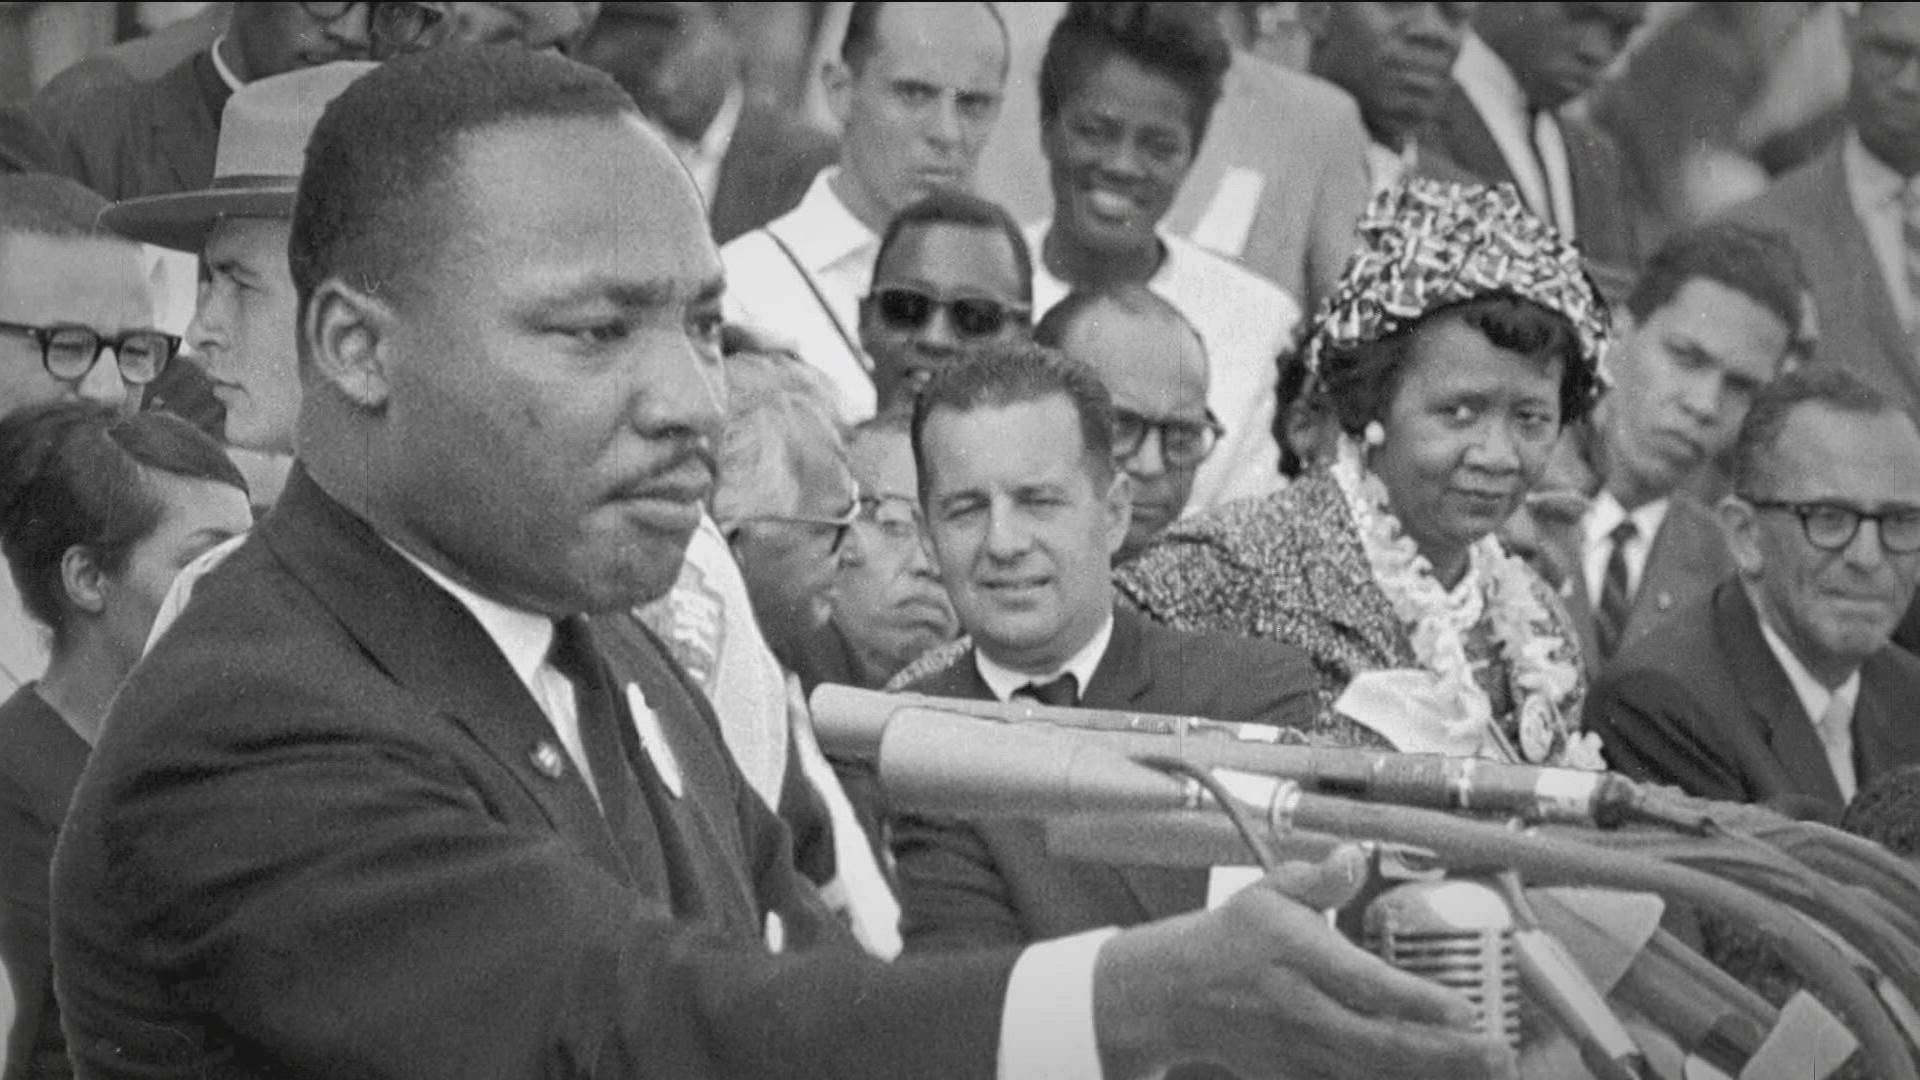 MLK Day 2022 Atlanta celebrates Dr. King